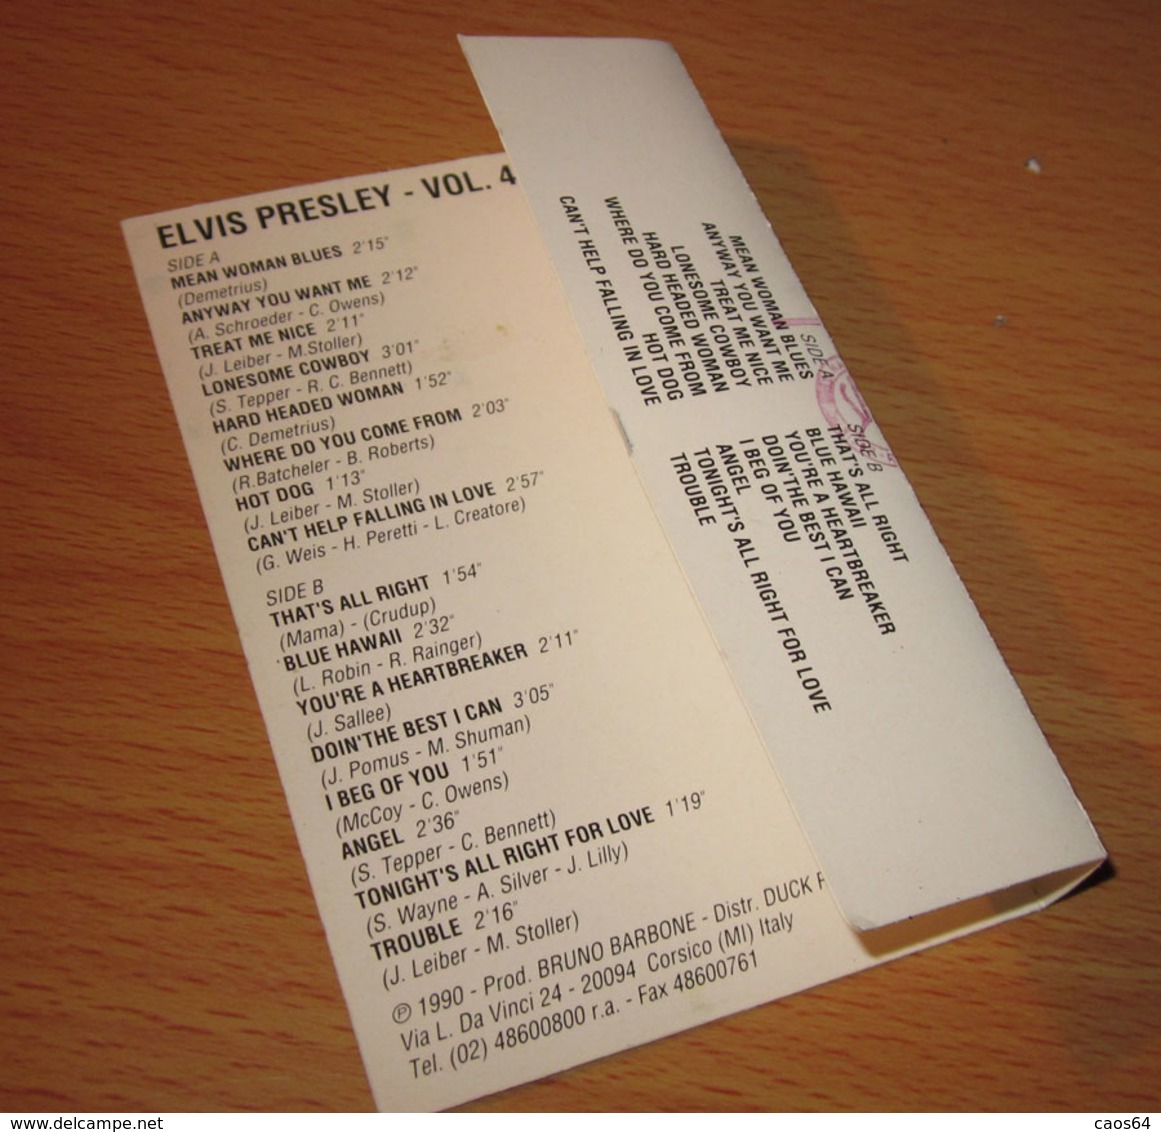 Elvis Presley Vol. 4 - Audiokassetten